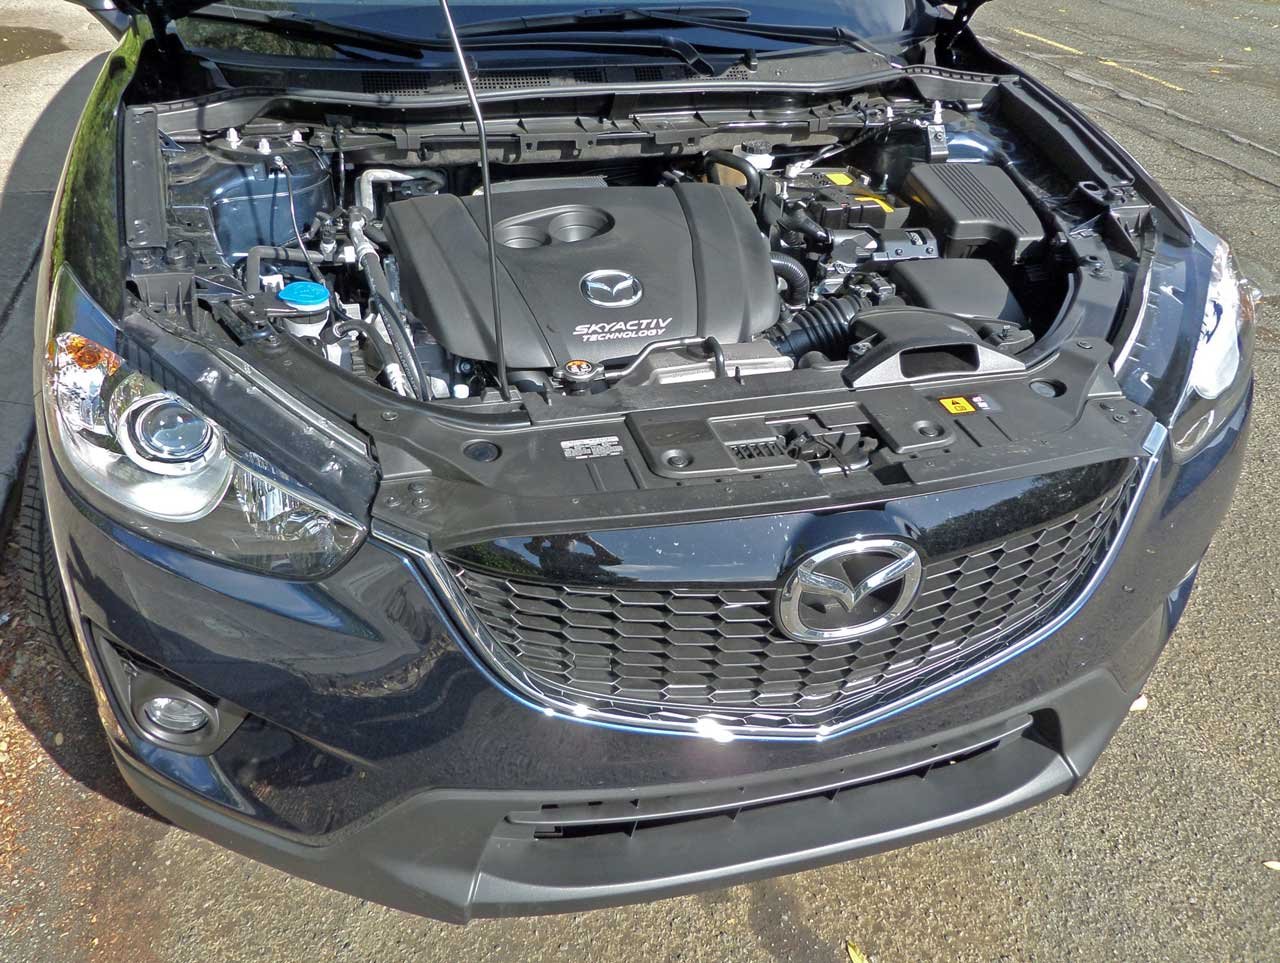 Мазда сх5 моторы. Мазда СХ-5 под капотом. Mazda CX 5 под капотом. Двигатель Mazda CX-5 2.5 2013. Двигатель Мазда cx5 2.5.